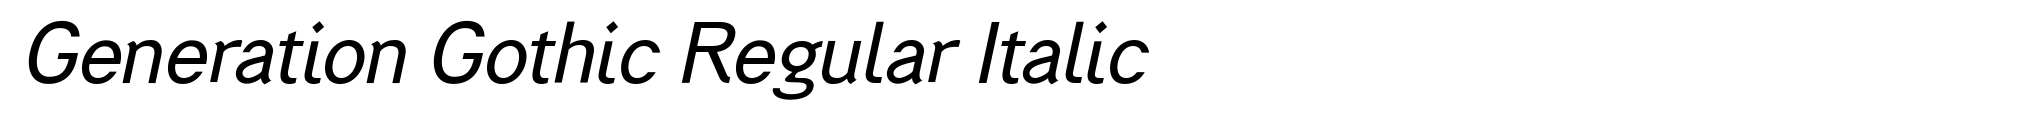 Generation Gothic Regular Italic image